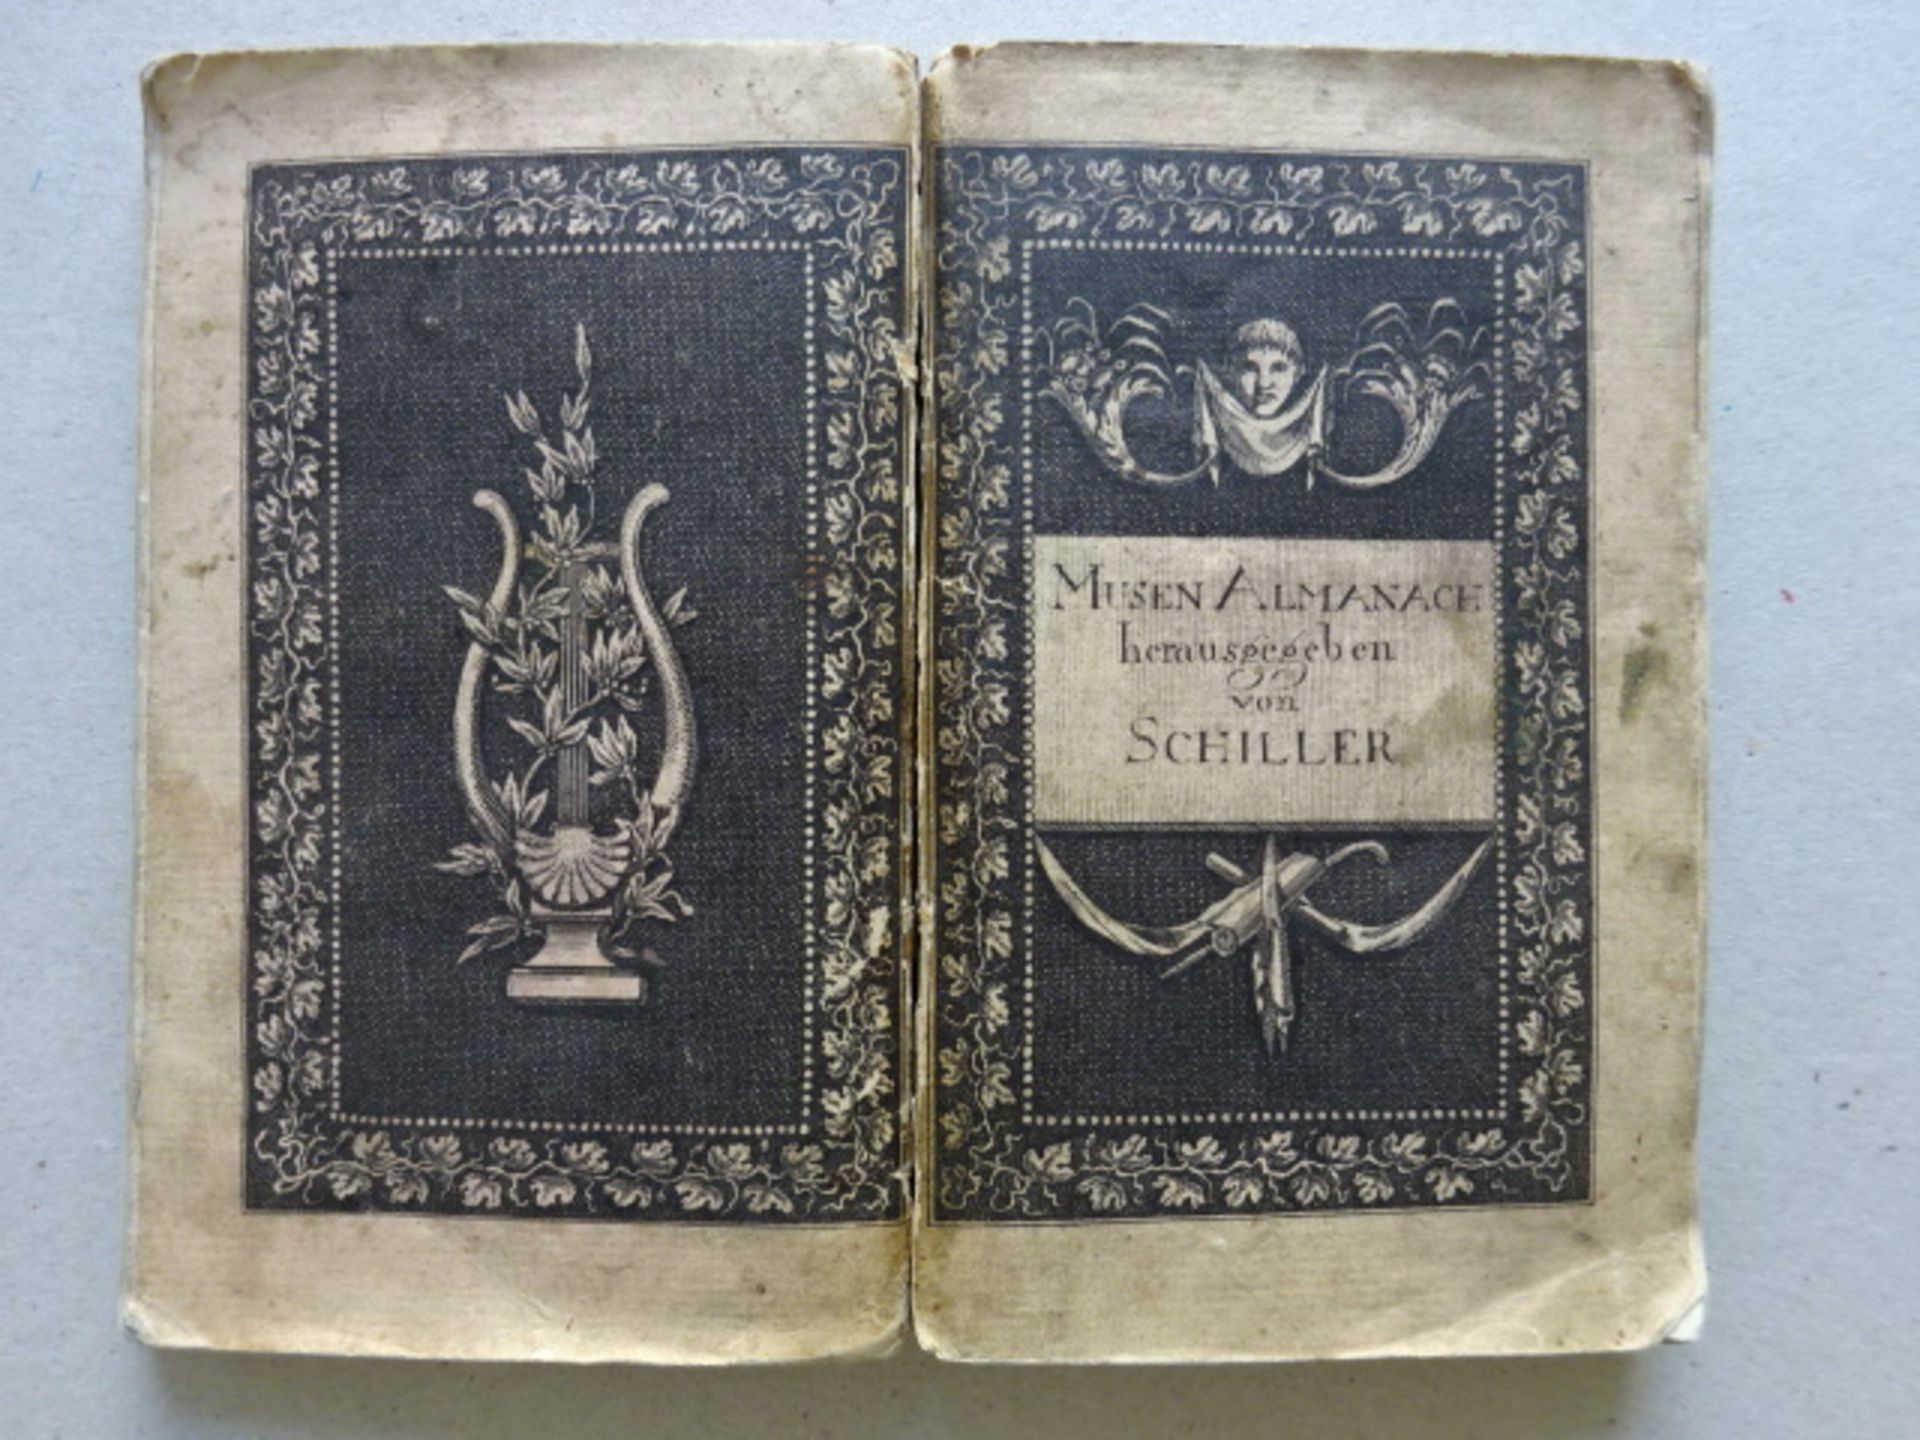 Schiller - Musen-Almanach 1796 - Image 5 of 5